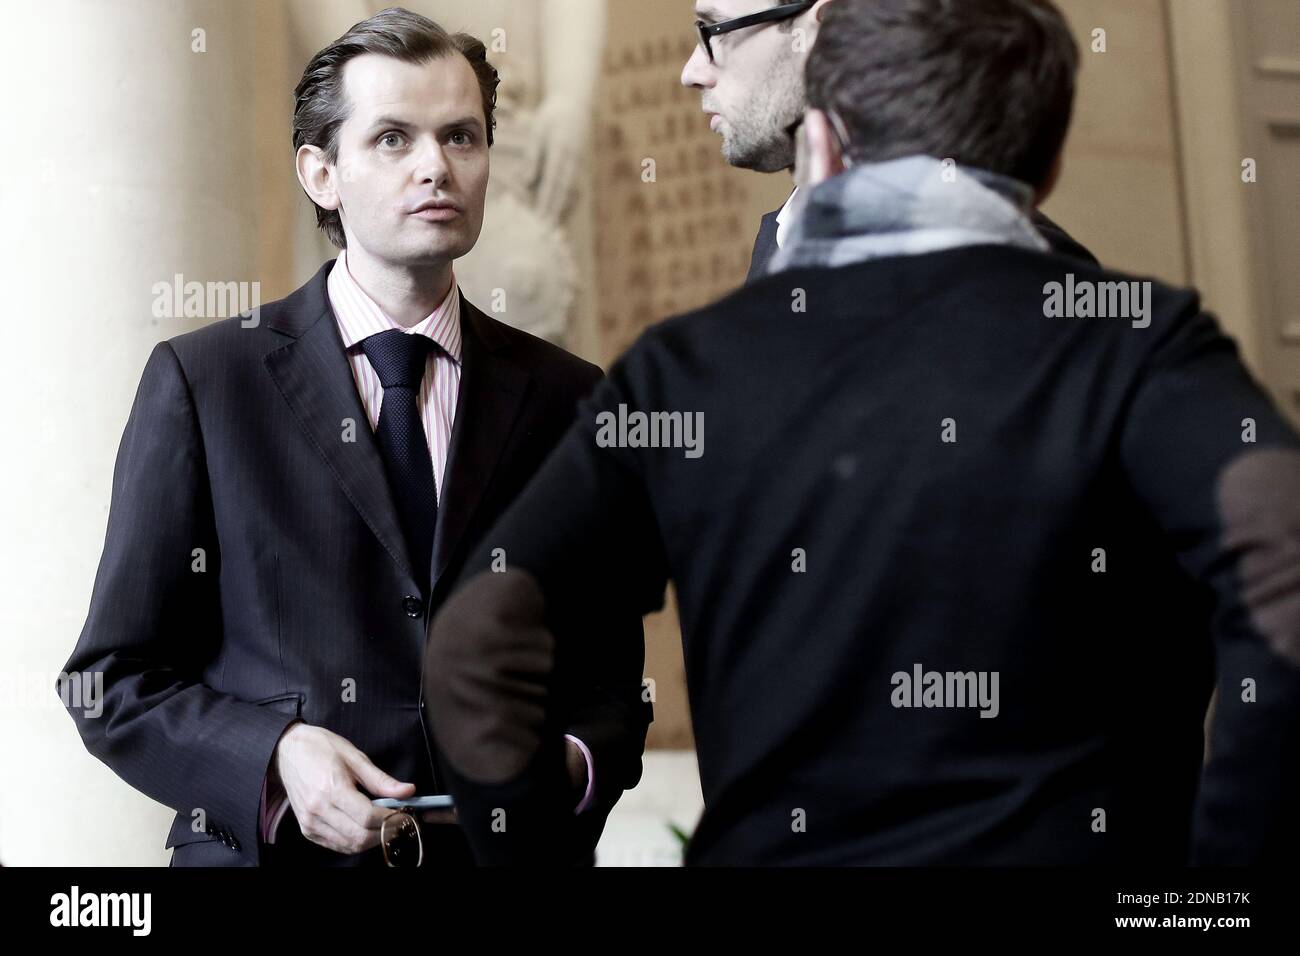 Guillaume Larrivant, député UMP, est photographié aux quatre colonnes lors de l'heure des questions à l'Assemblée nationale à Paris, en France, le 27 juin 2015. Photo de Stephane Lemouton/ABACAPRESS.COM Banque D'Images